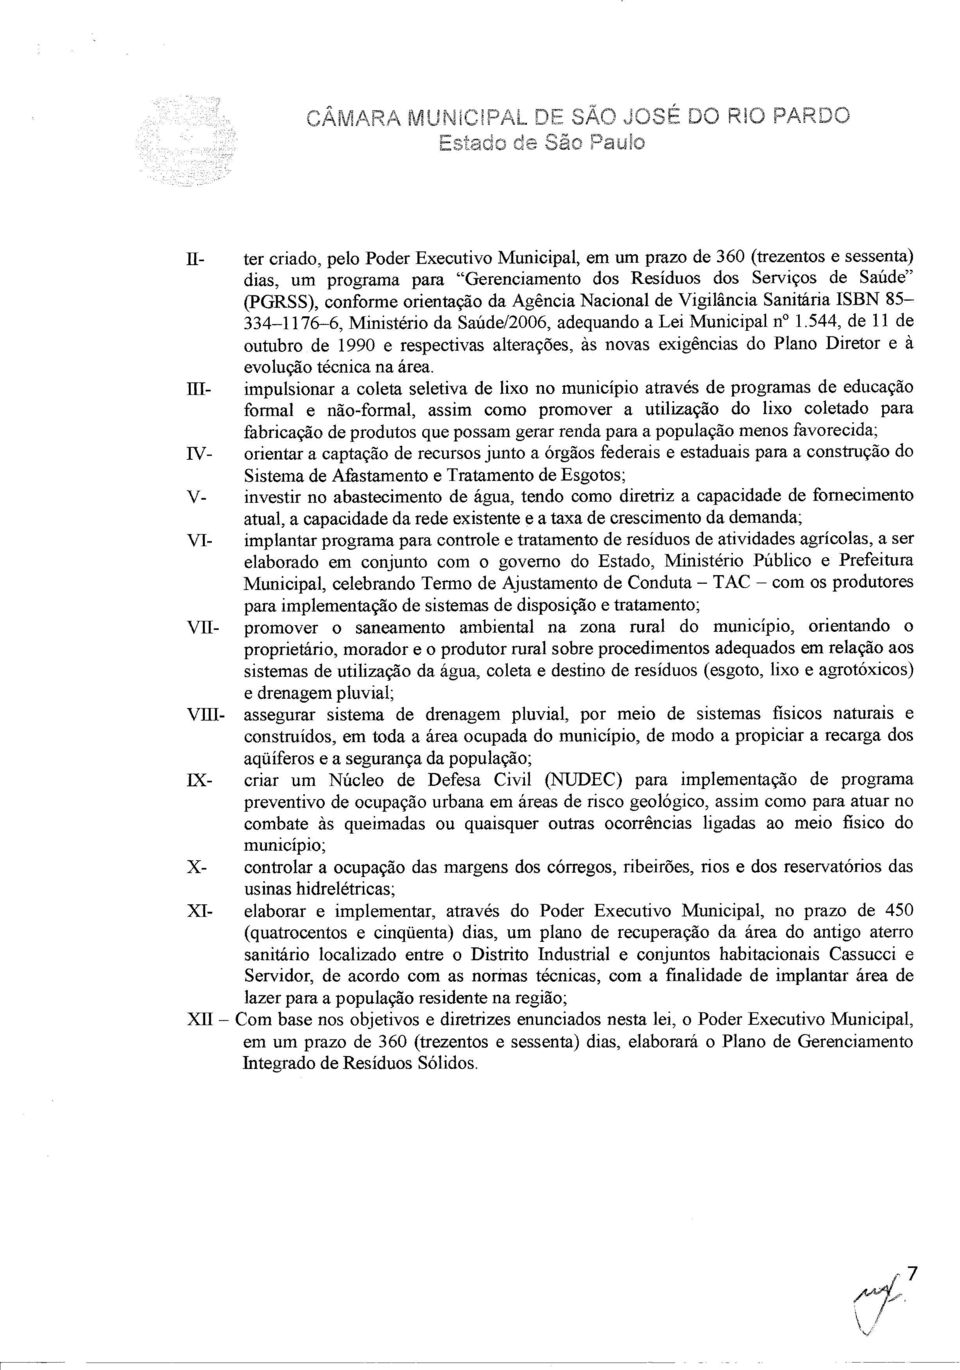 544, de 11 de outubro de 1990 e respectivas alterações, às novas exigências do Plano Diretor e à evolução técnica na área.